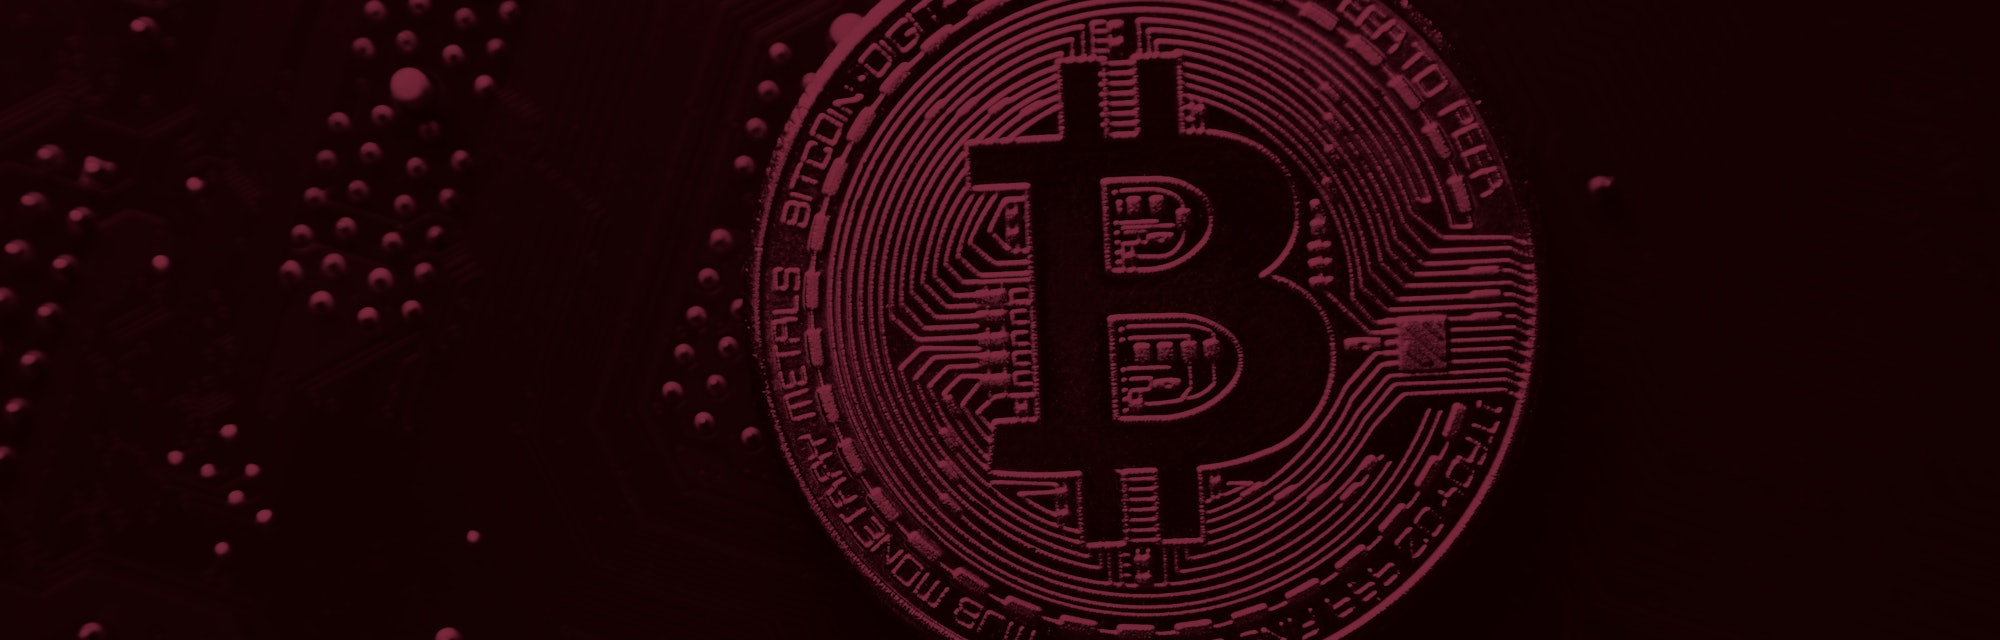 bitcoin pelno nuomonė 2022 m ratan tata, investuojanti į kriptovaliutą